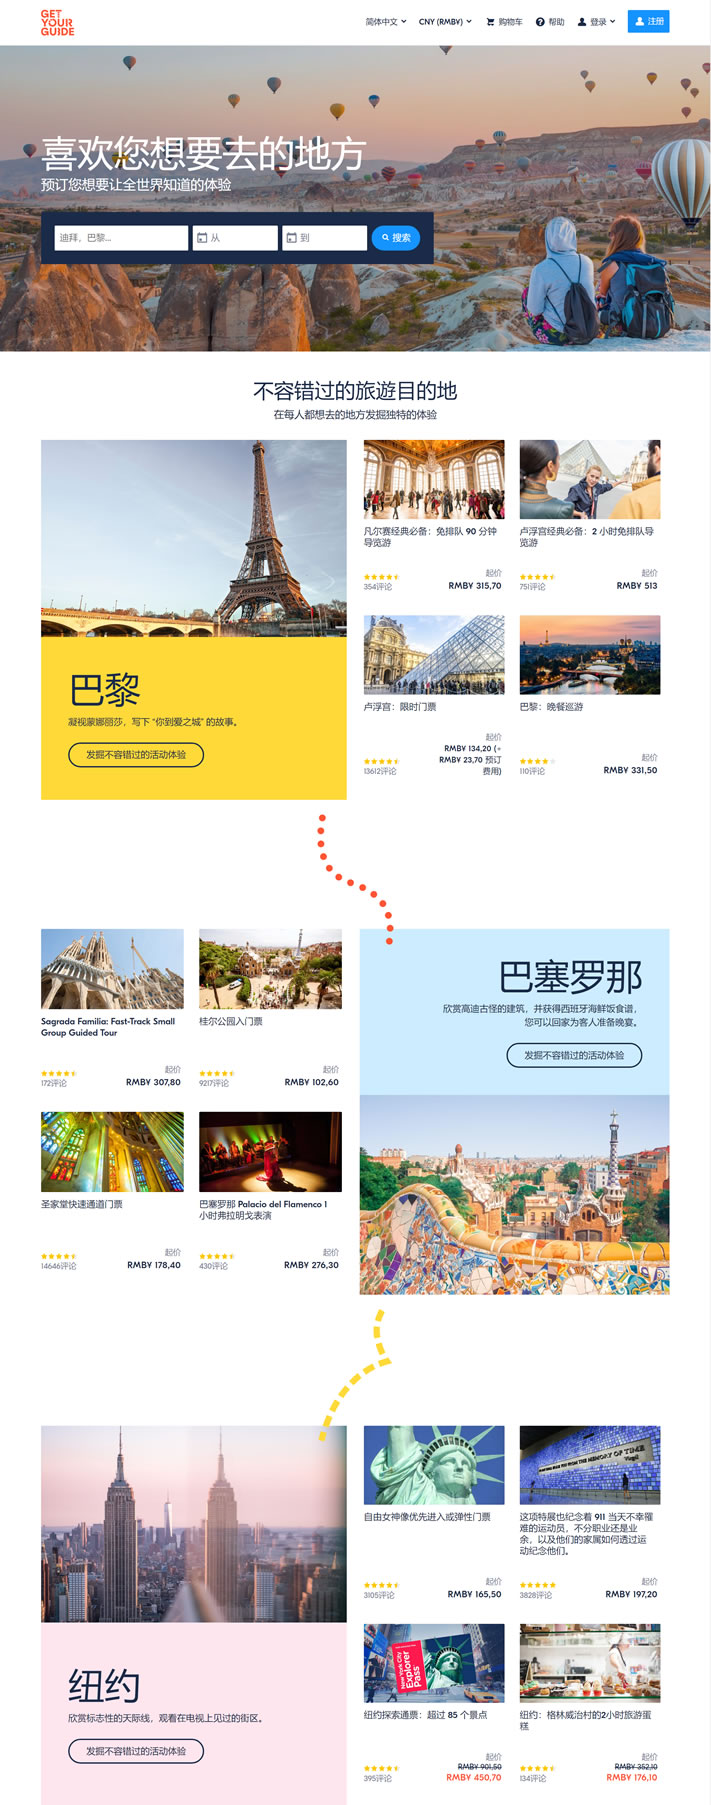 GetYourGuide台湾：预订旅游活动、景点和旅游项目